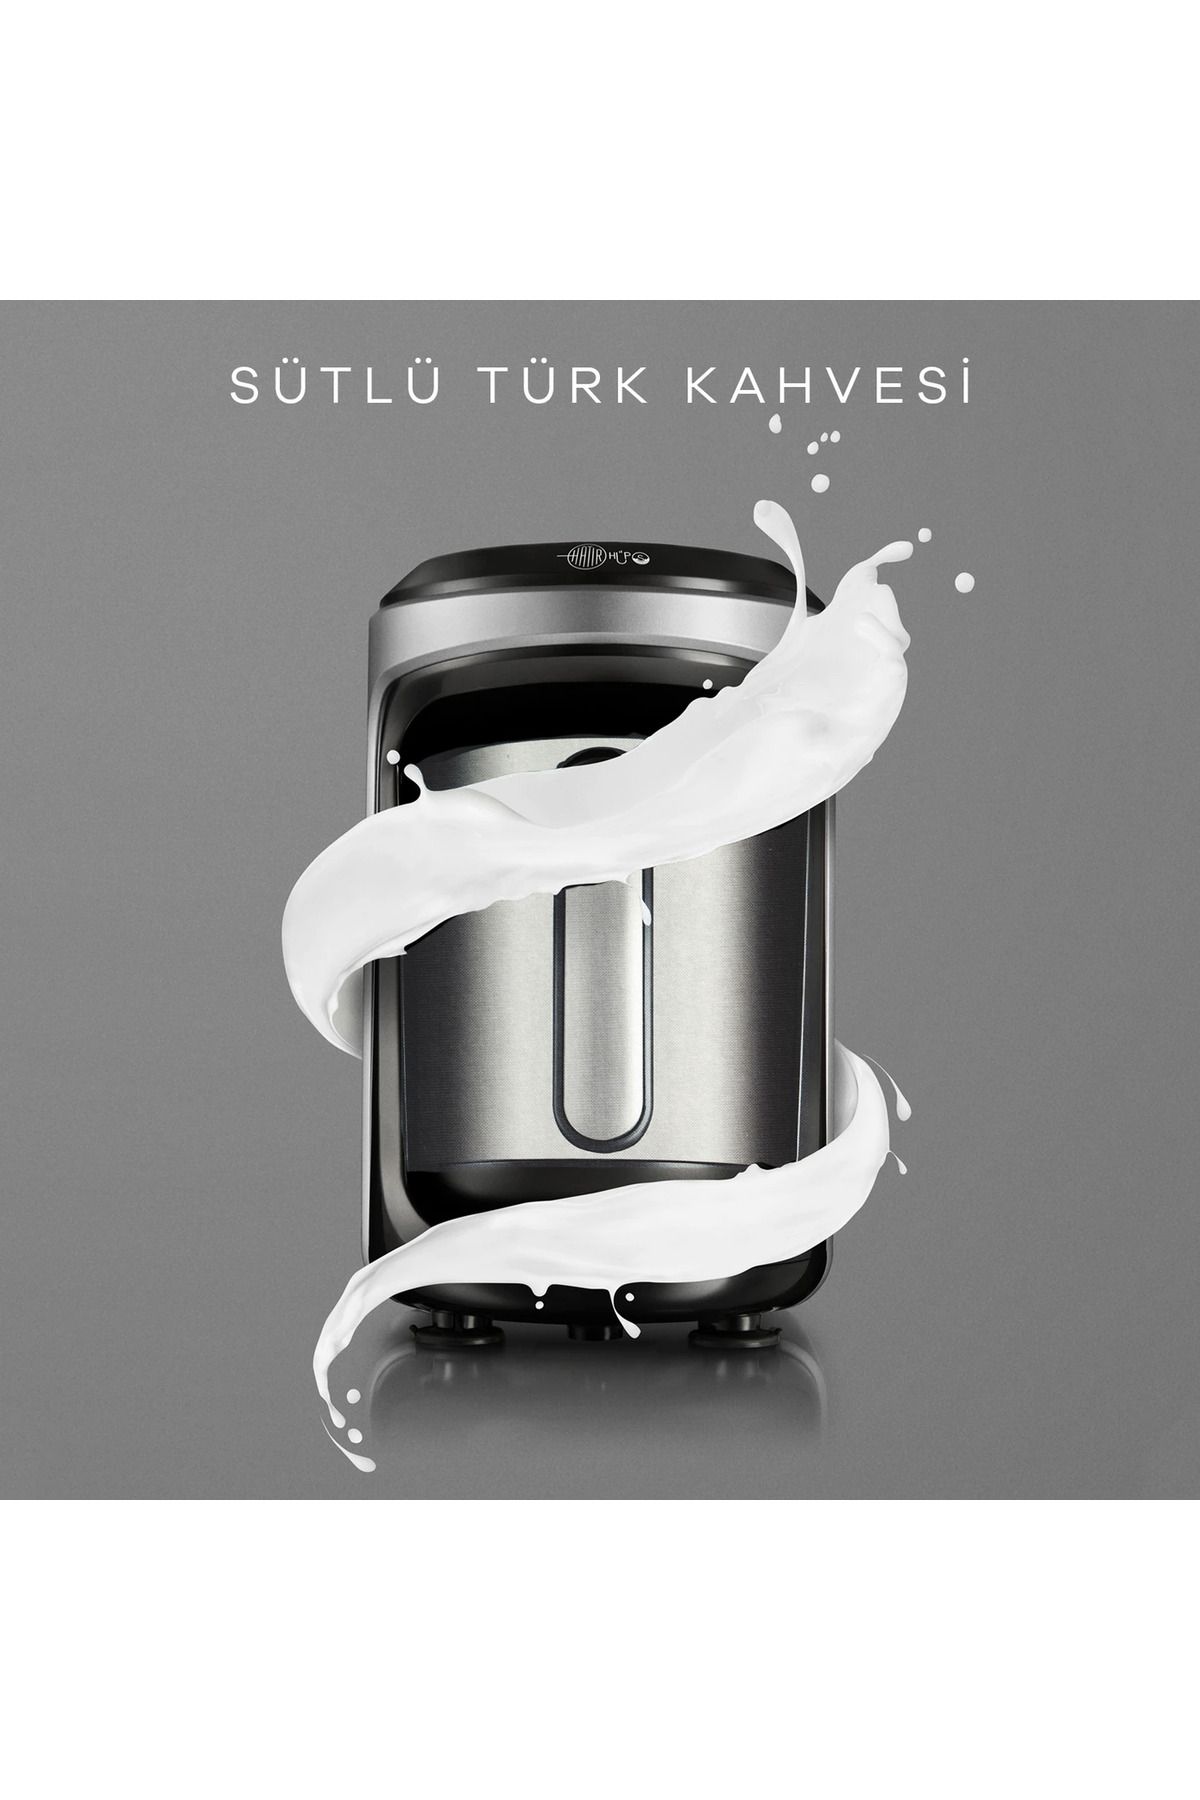 Karaca Hatır Hüps ÇELİK CEZVE Sütlü Türk Kahve Makinesi